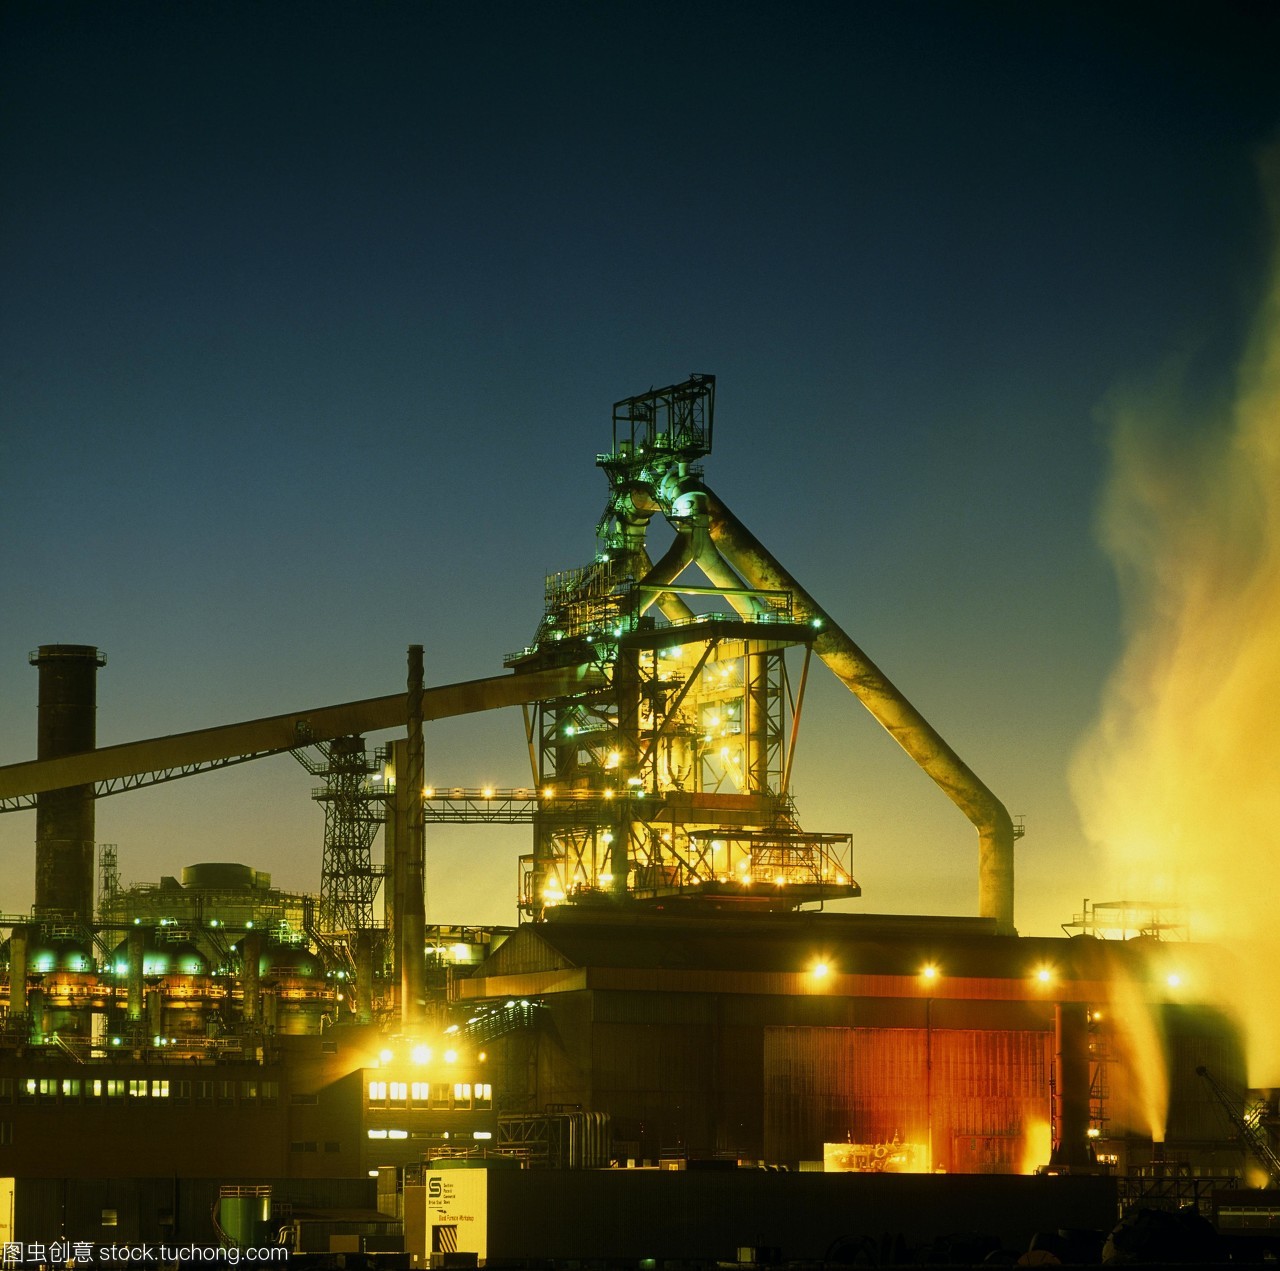 钢厂的钢材在雷德卡工作晚上提英格兰钢工程包含钢铁生产的高炉生产铁